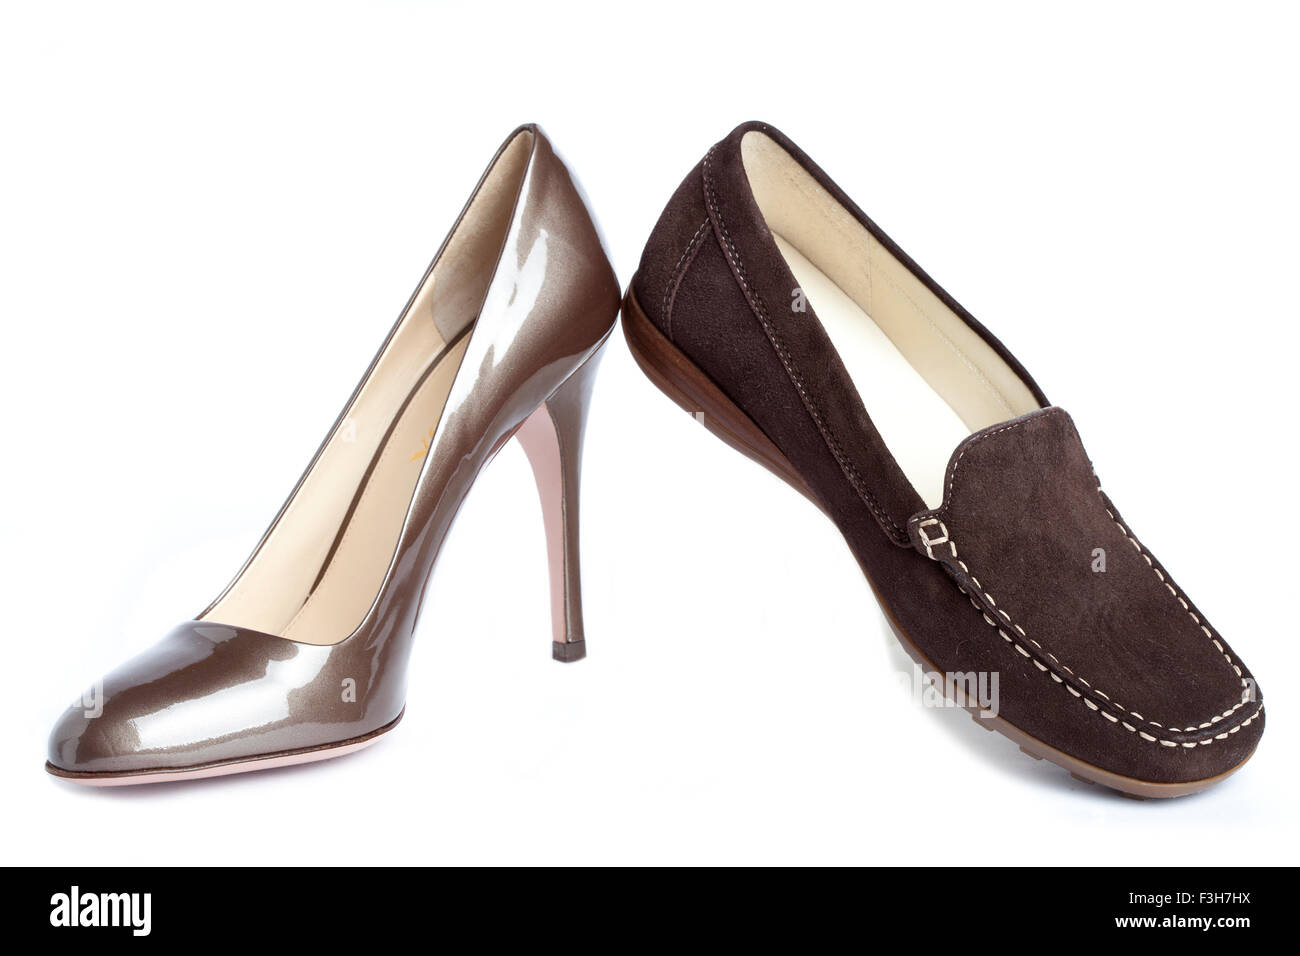 Les mocassins et les escarpins - chaussures femmes standard pas de nom  Photo Stock - Alamy